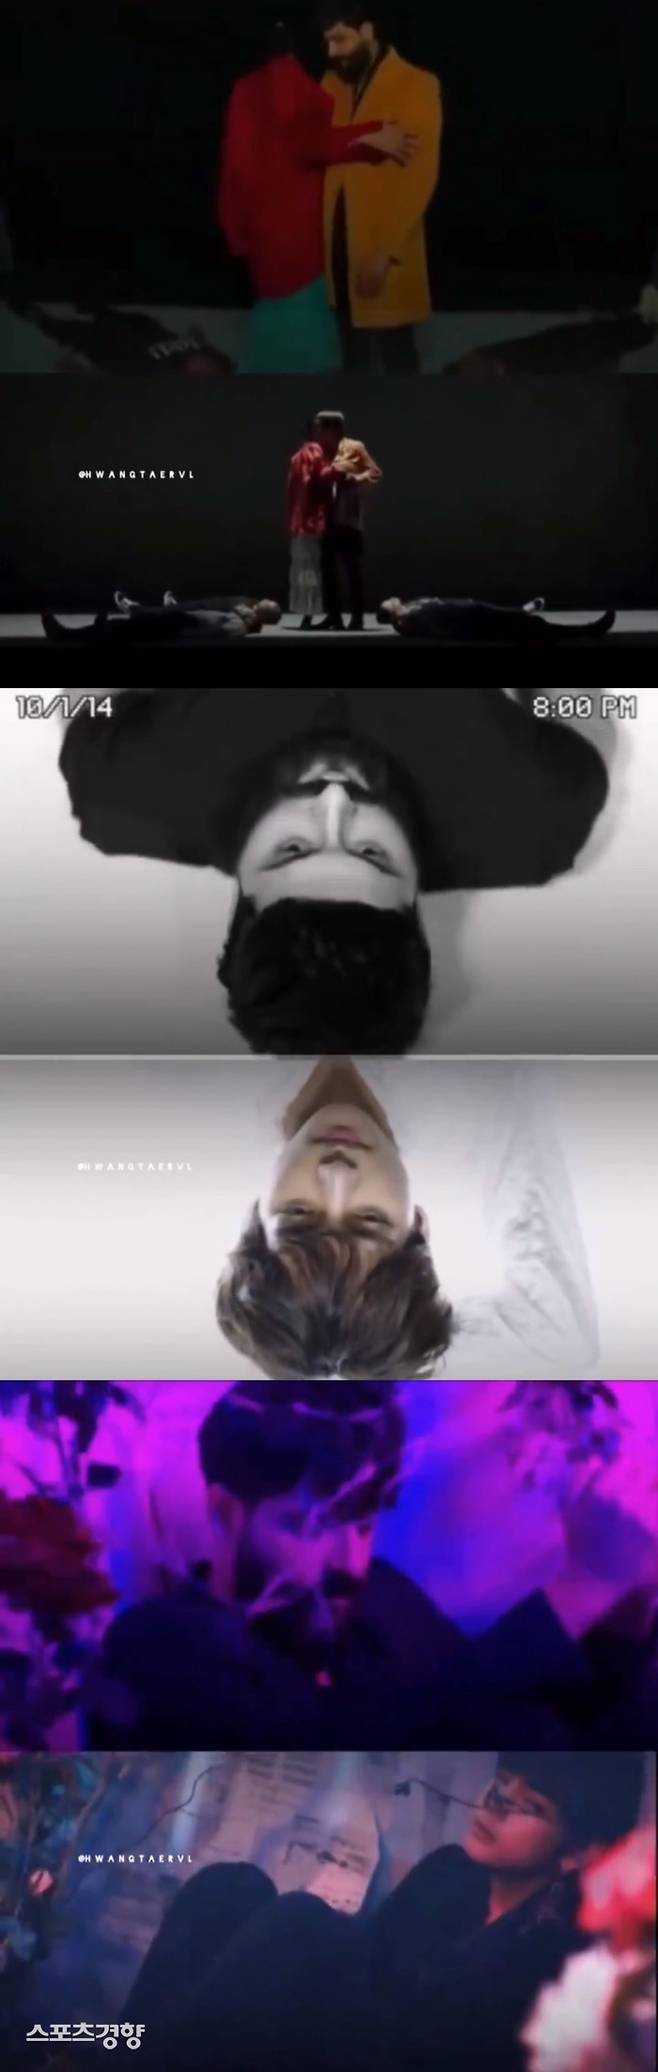 아랍권 가수 아메드 알바하르의 티저영상(위)과 방탄소년단 뷔의 솔로곡 뮤직비디오의 일부(아래), 해당 MV는 구도는 물론 의상 색감까지 매우 흡사하다. 사진 SNS